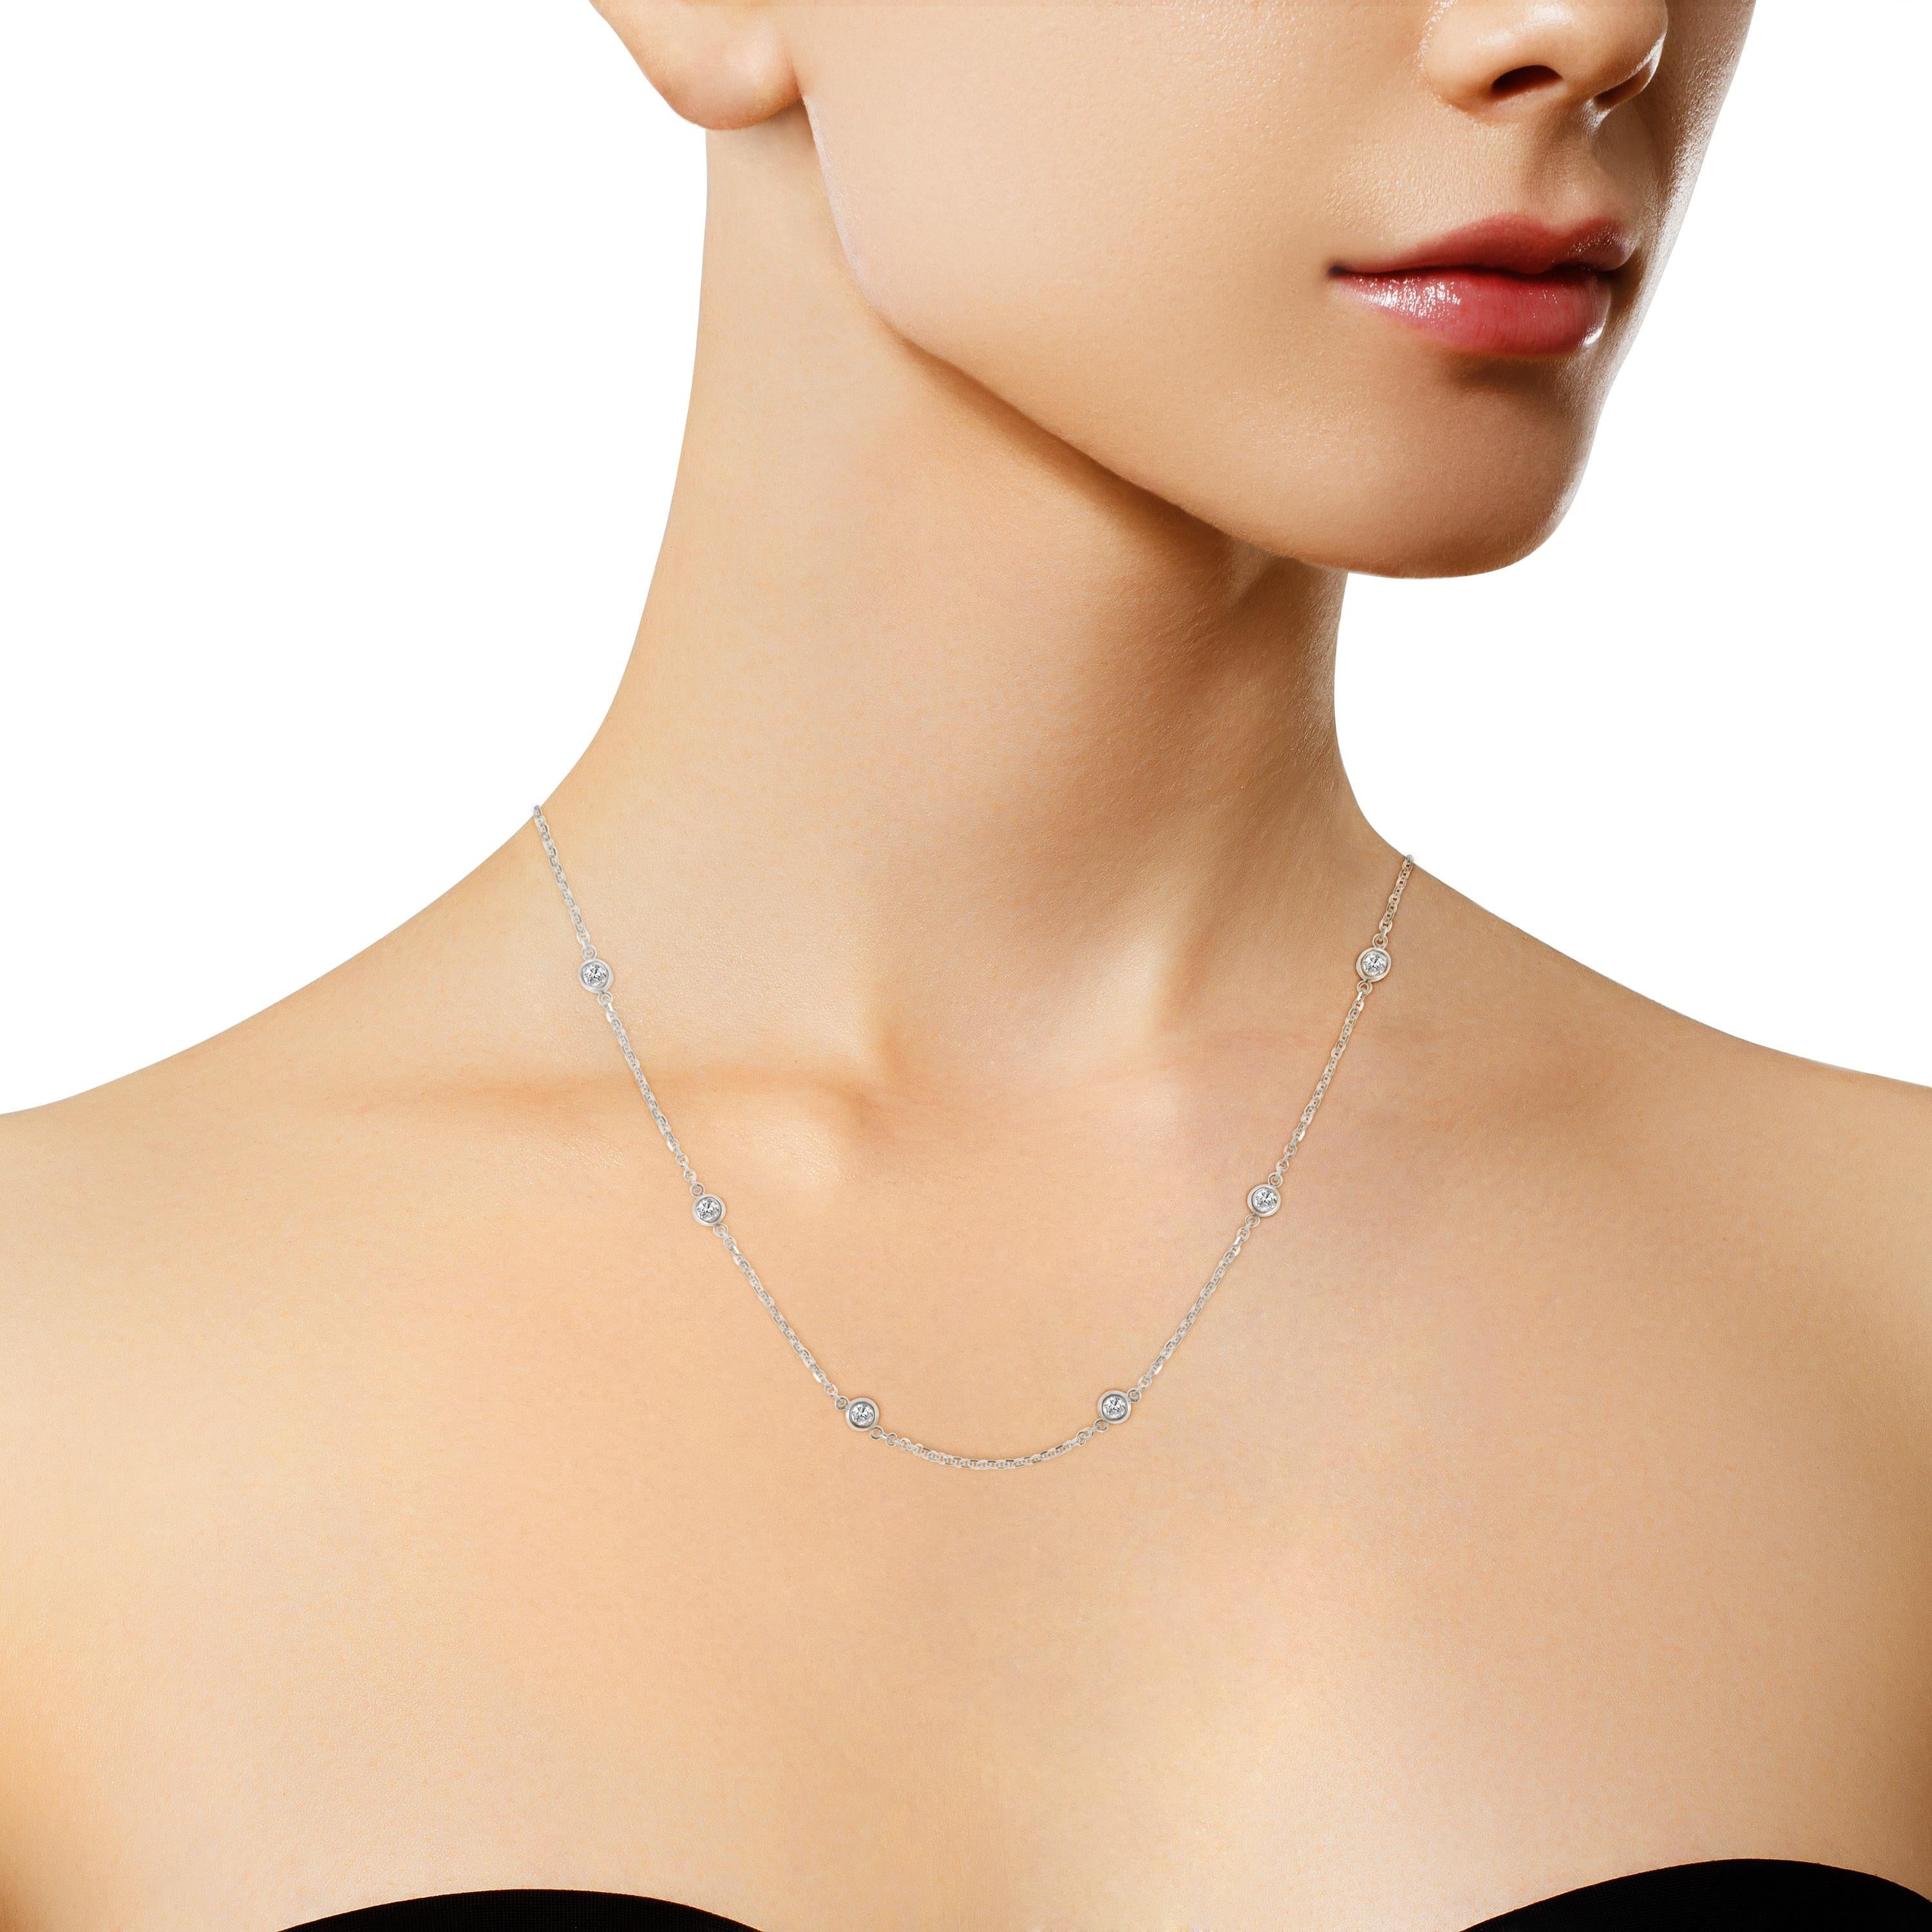 2 carat diamond station necklace